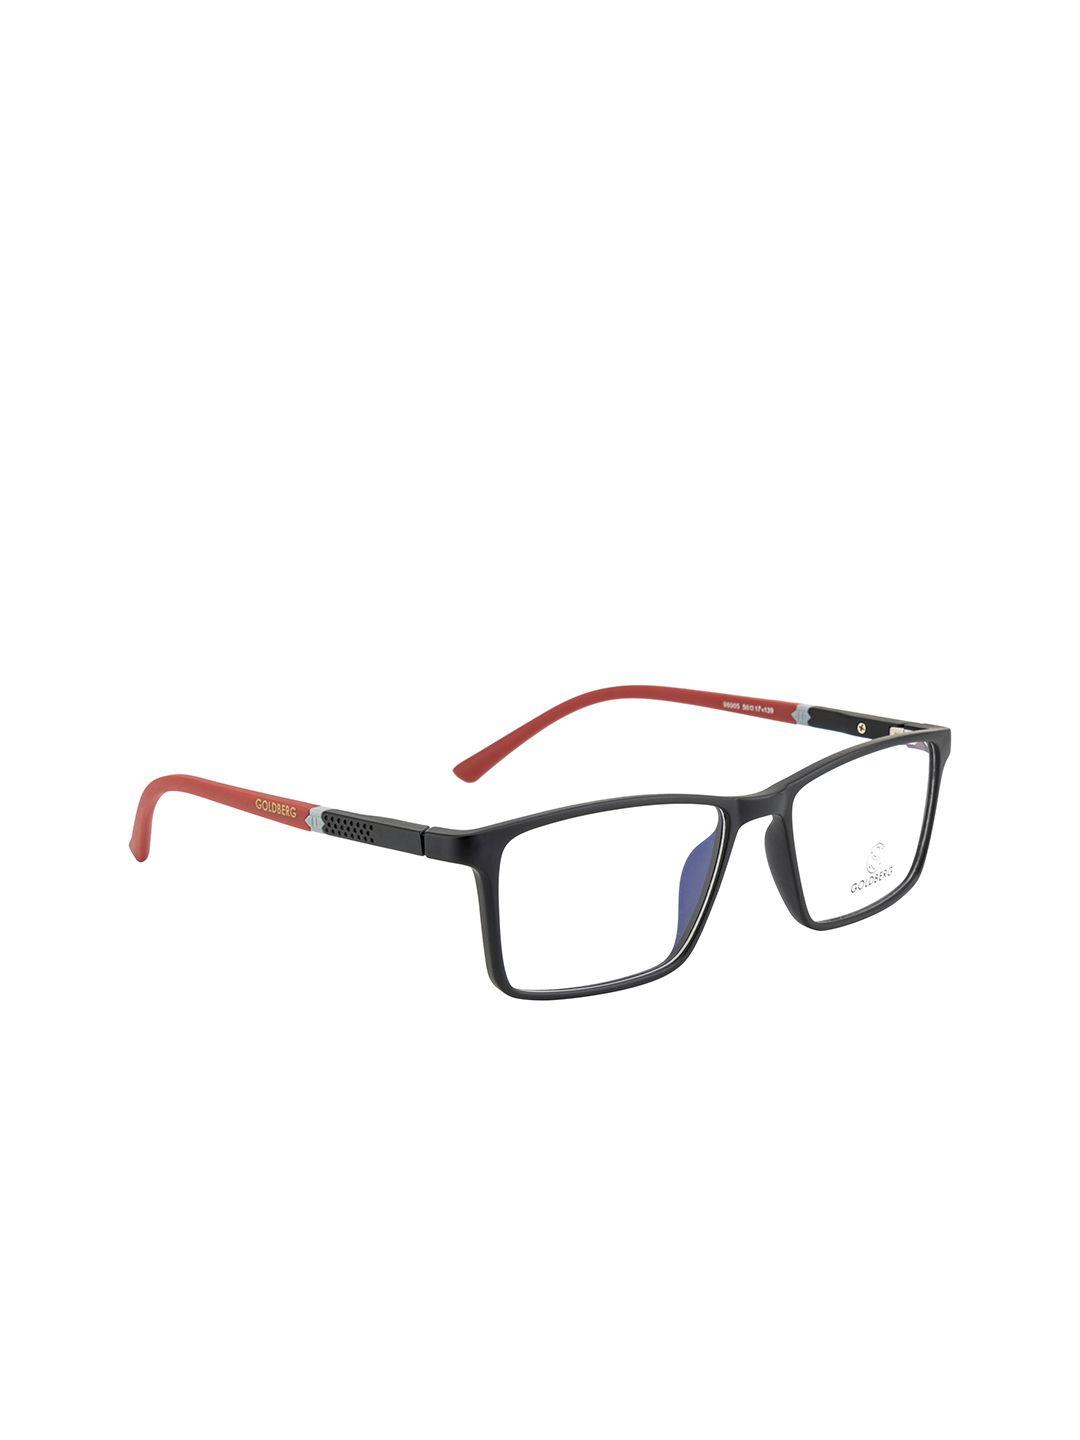 gold berg unisex black & red colourblocked full rim wayfarer frames eyeglasses